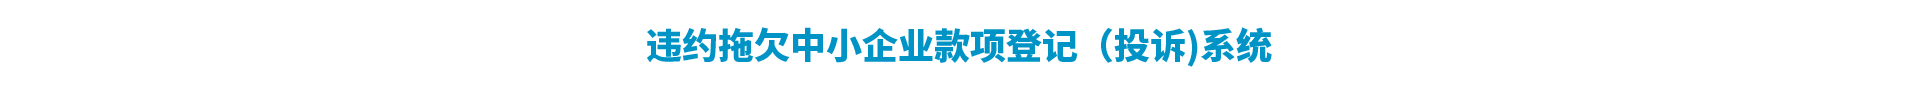 湖南省违约拖欠中小企业款项登记(投诉)系统